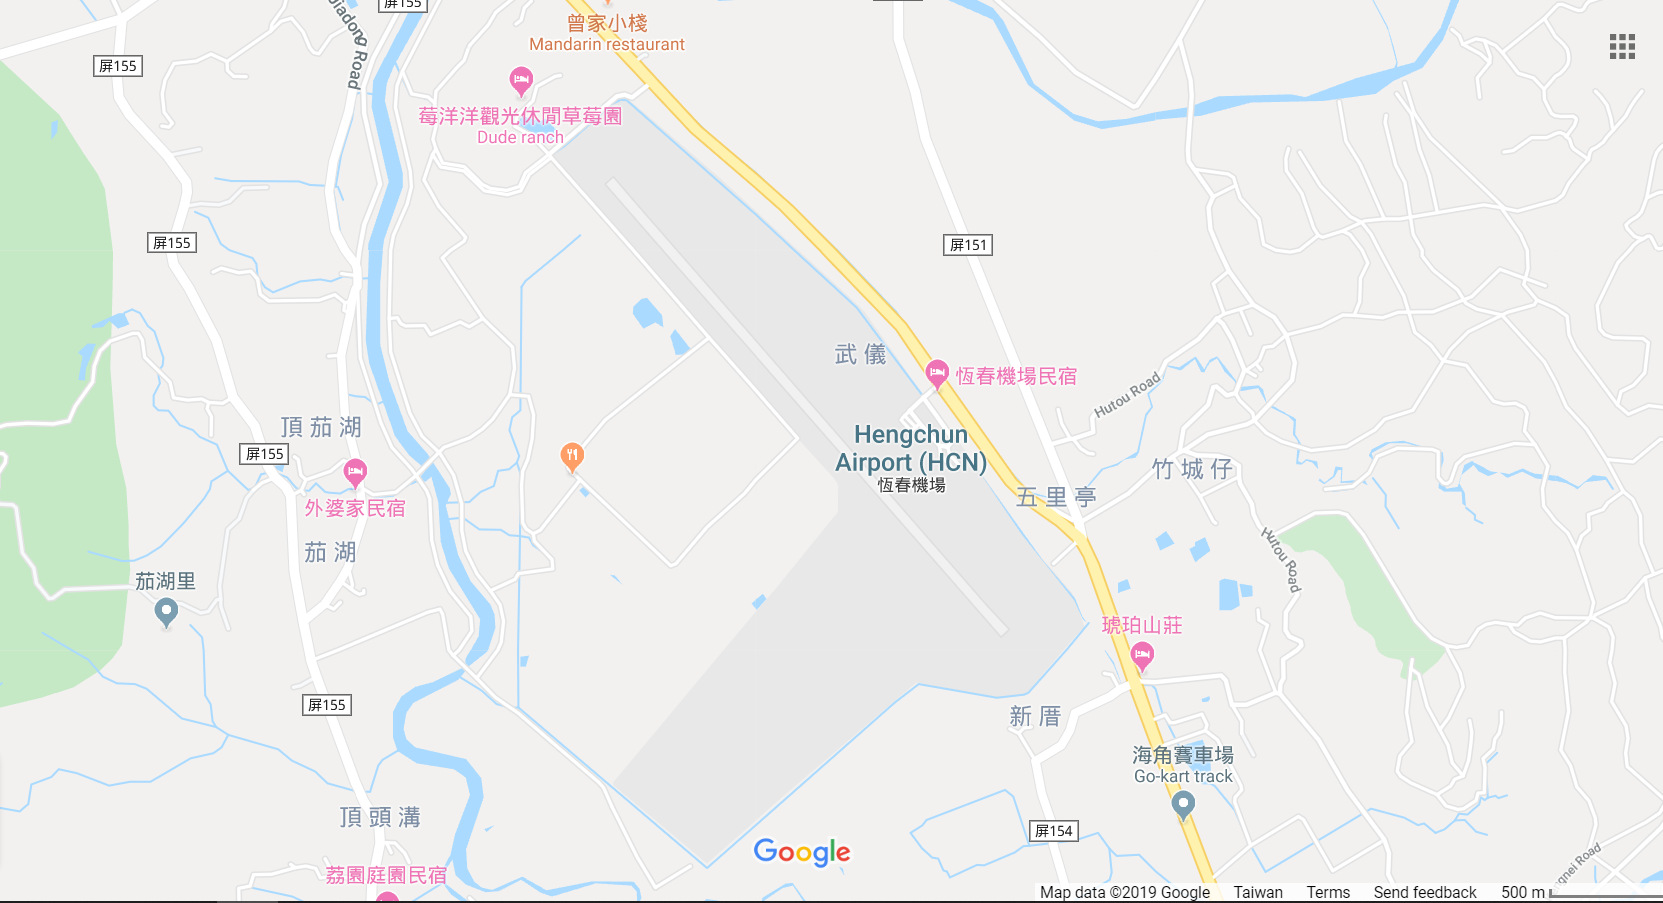 MAP OF HENGCHUN AIRPORT